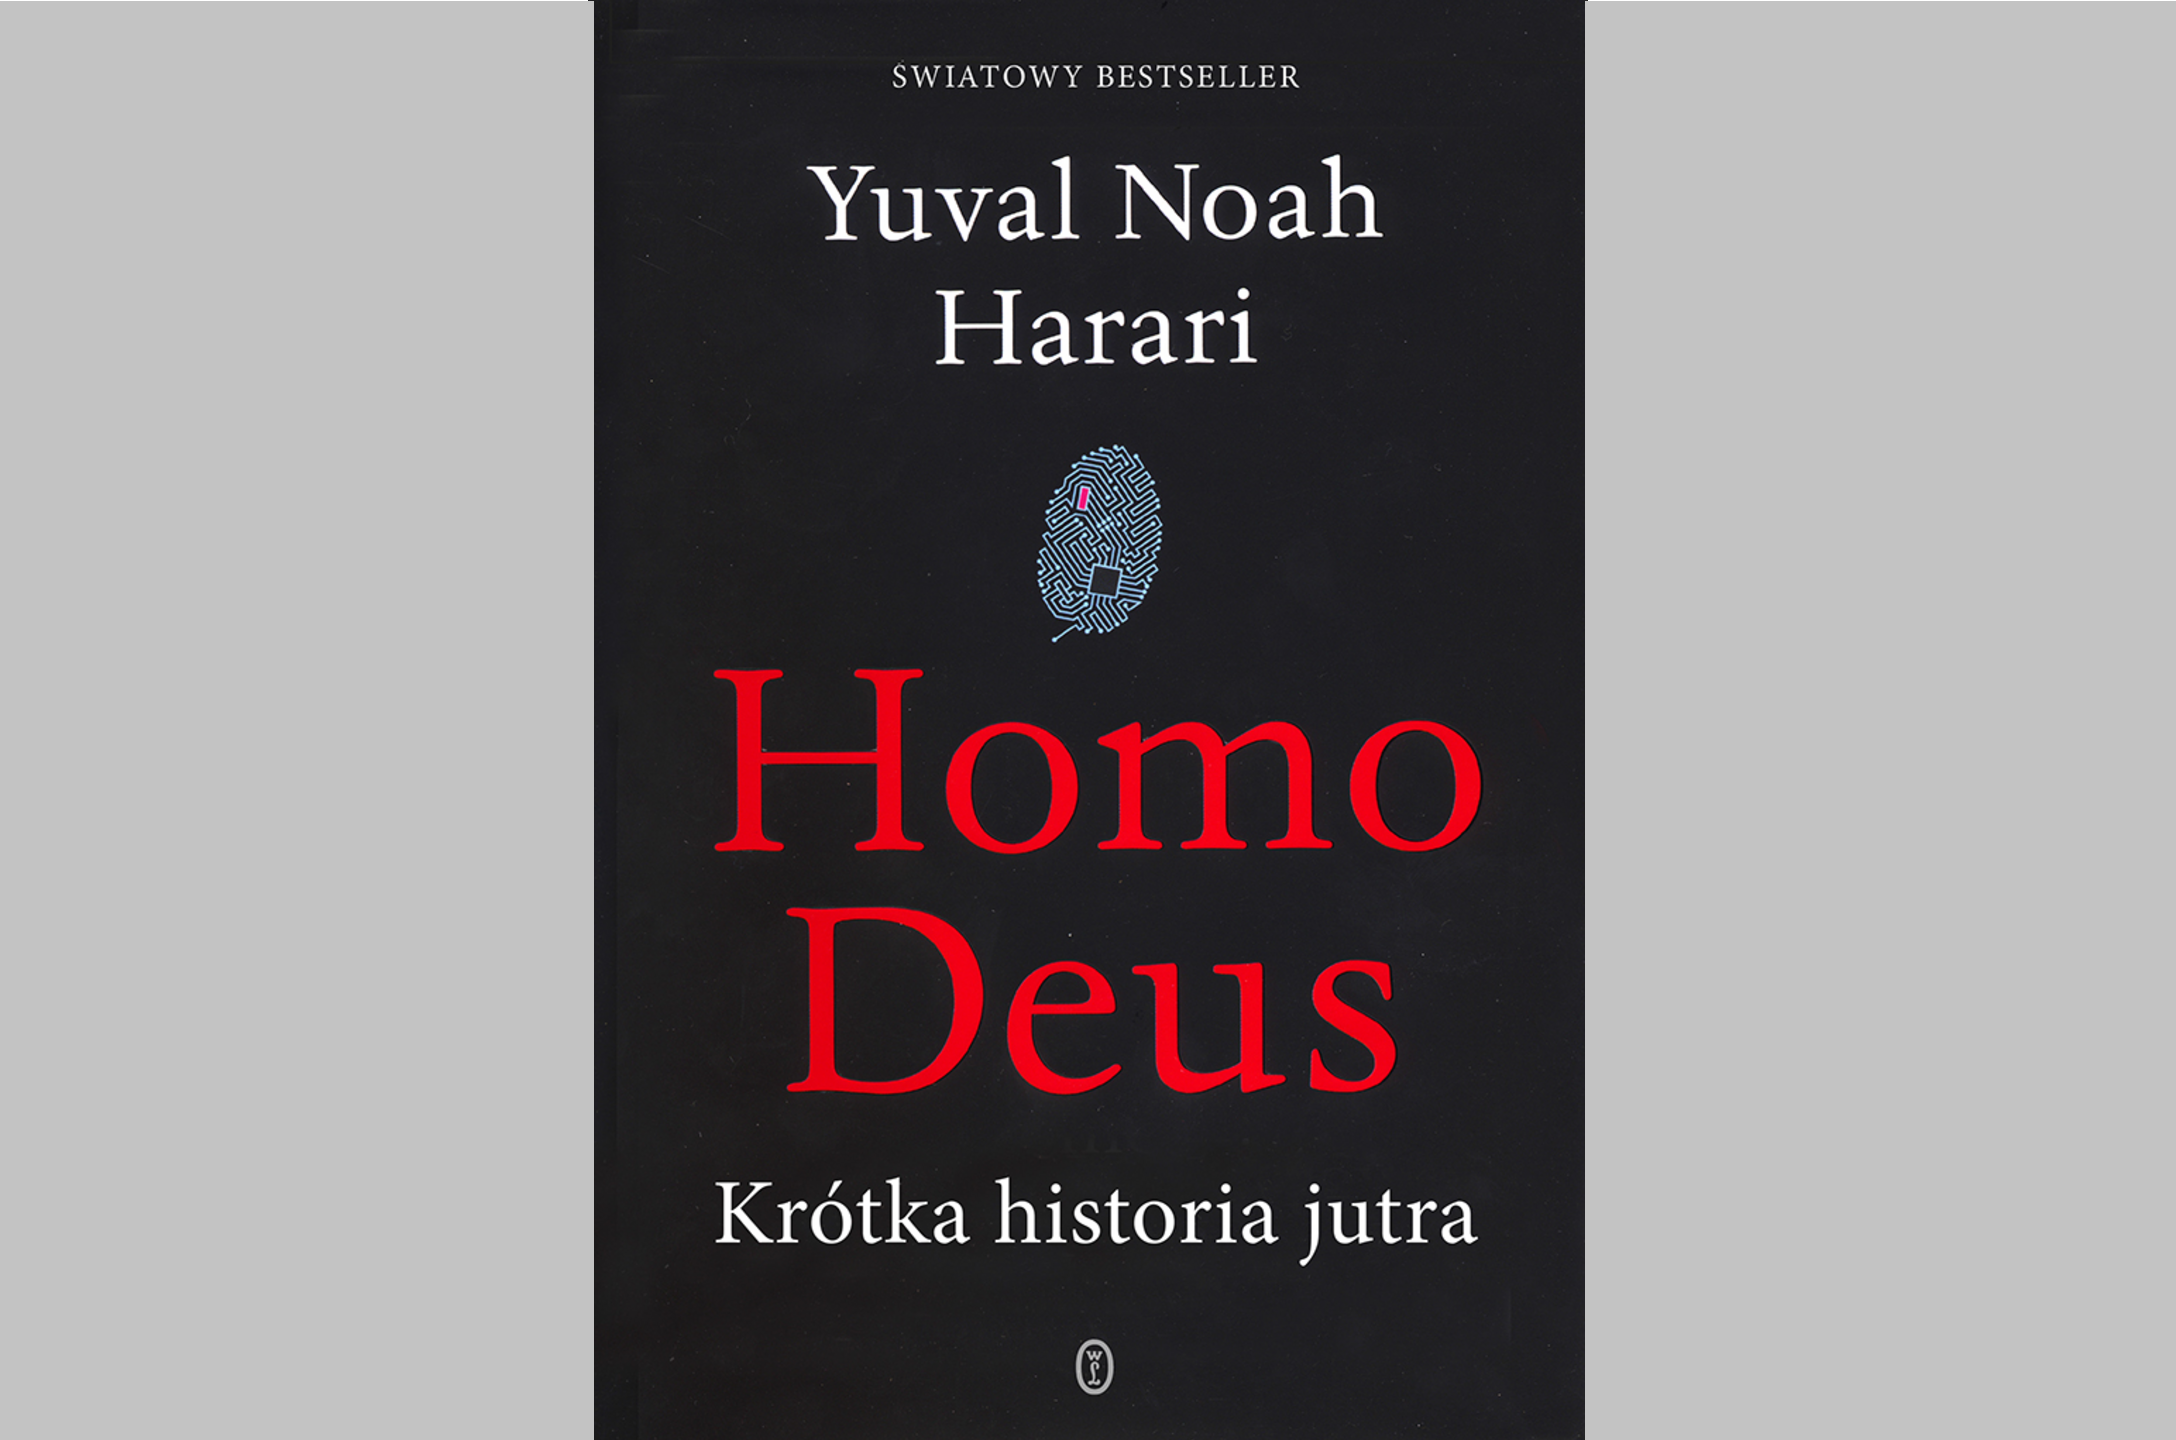 Homo deus, Krótka historia jutra książka